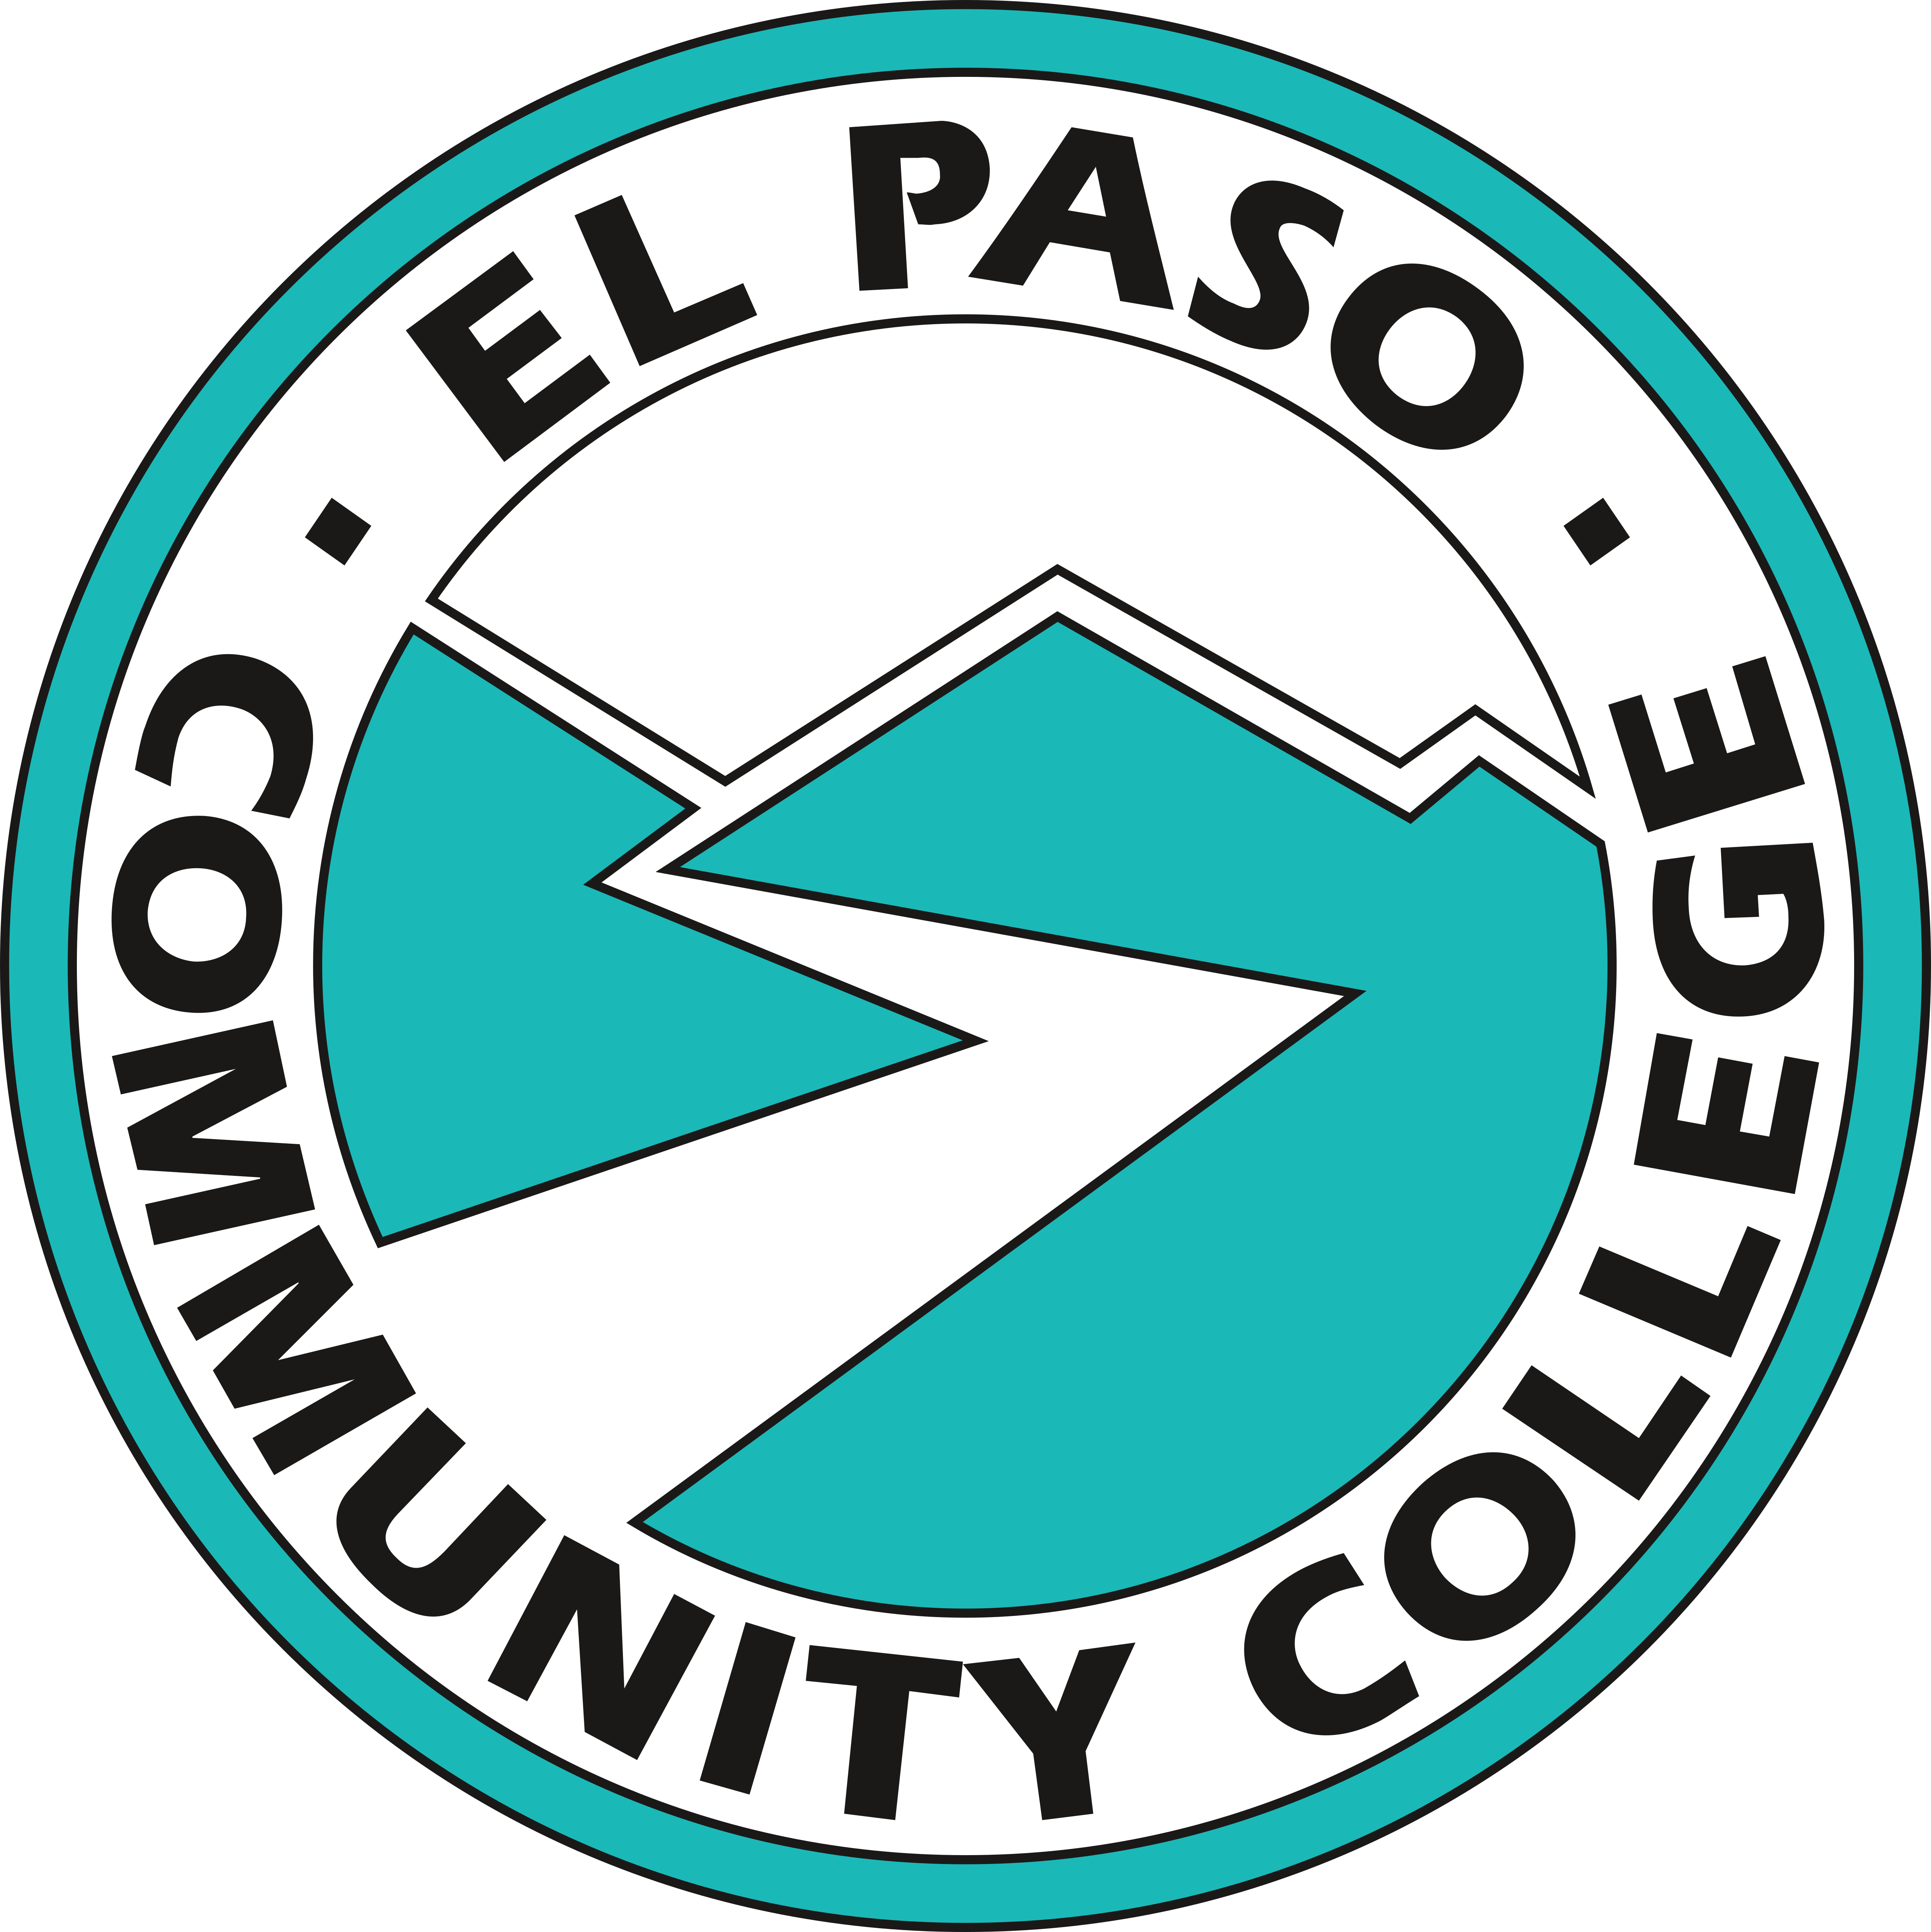 El Paso Logo Png Vectors Free Download - vrogue.co